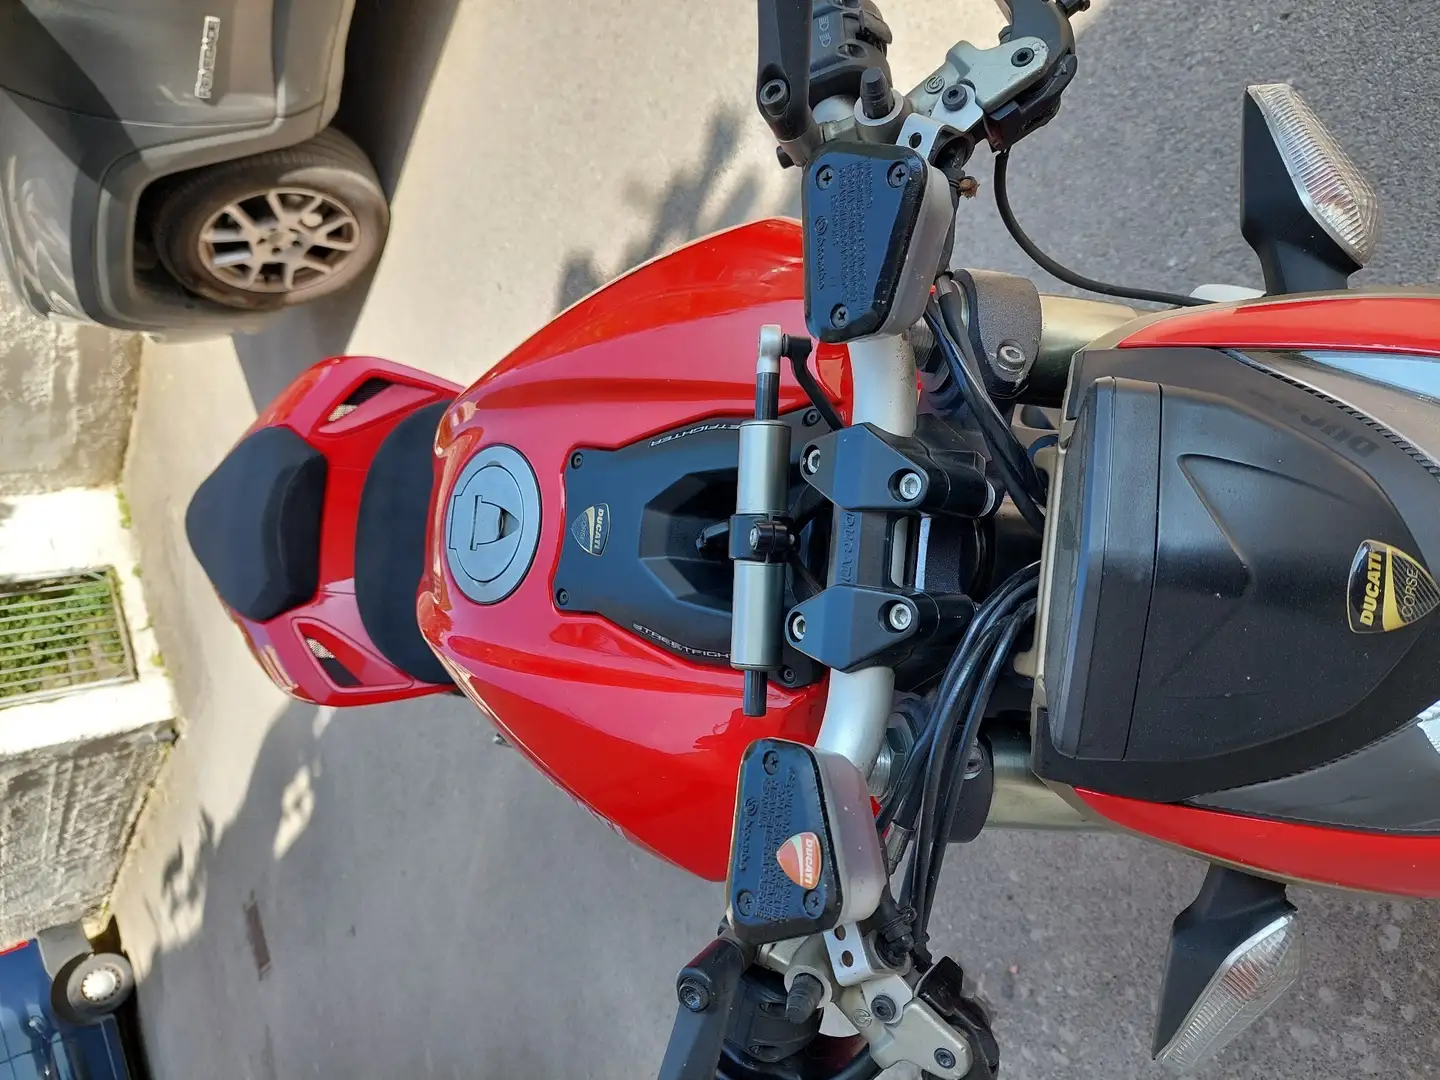 Ducati Streetfighter crvena - 2